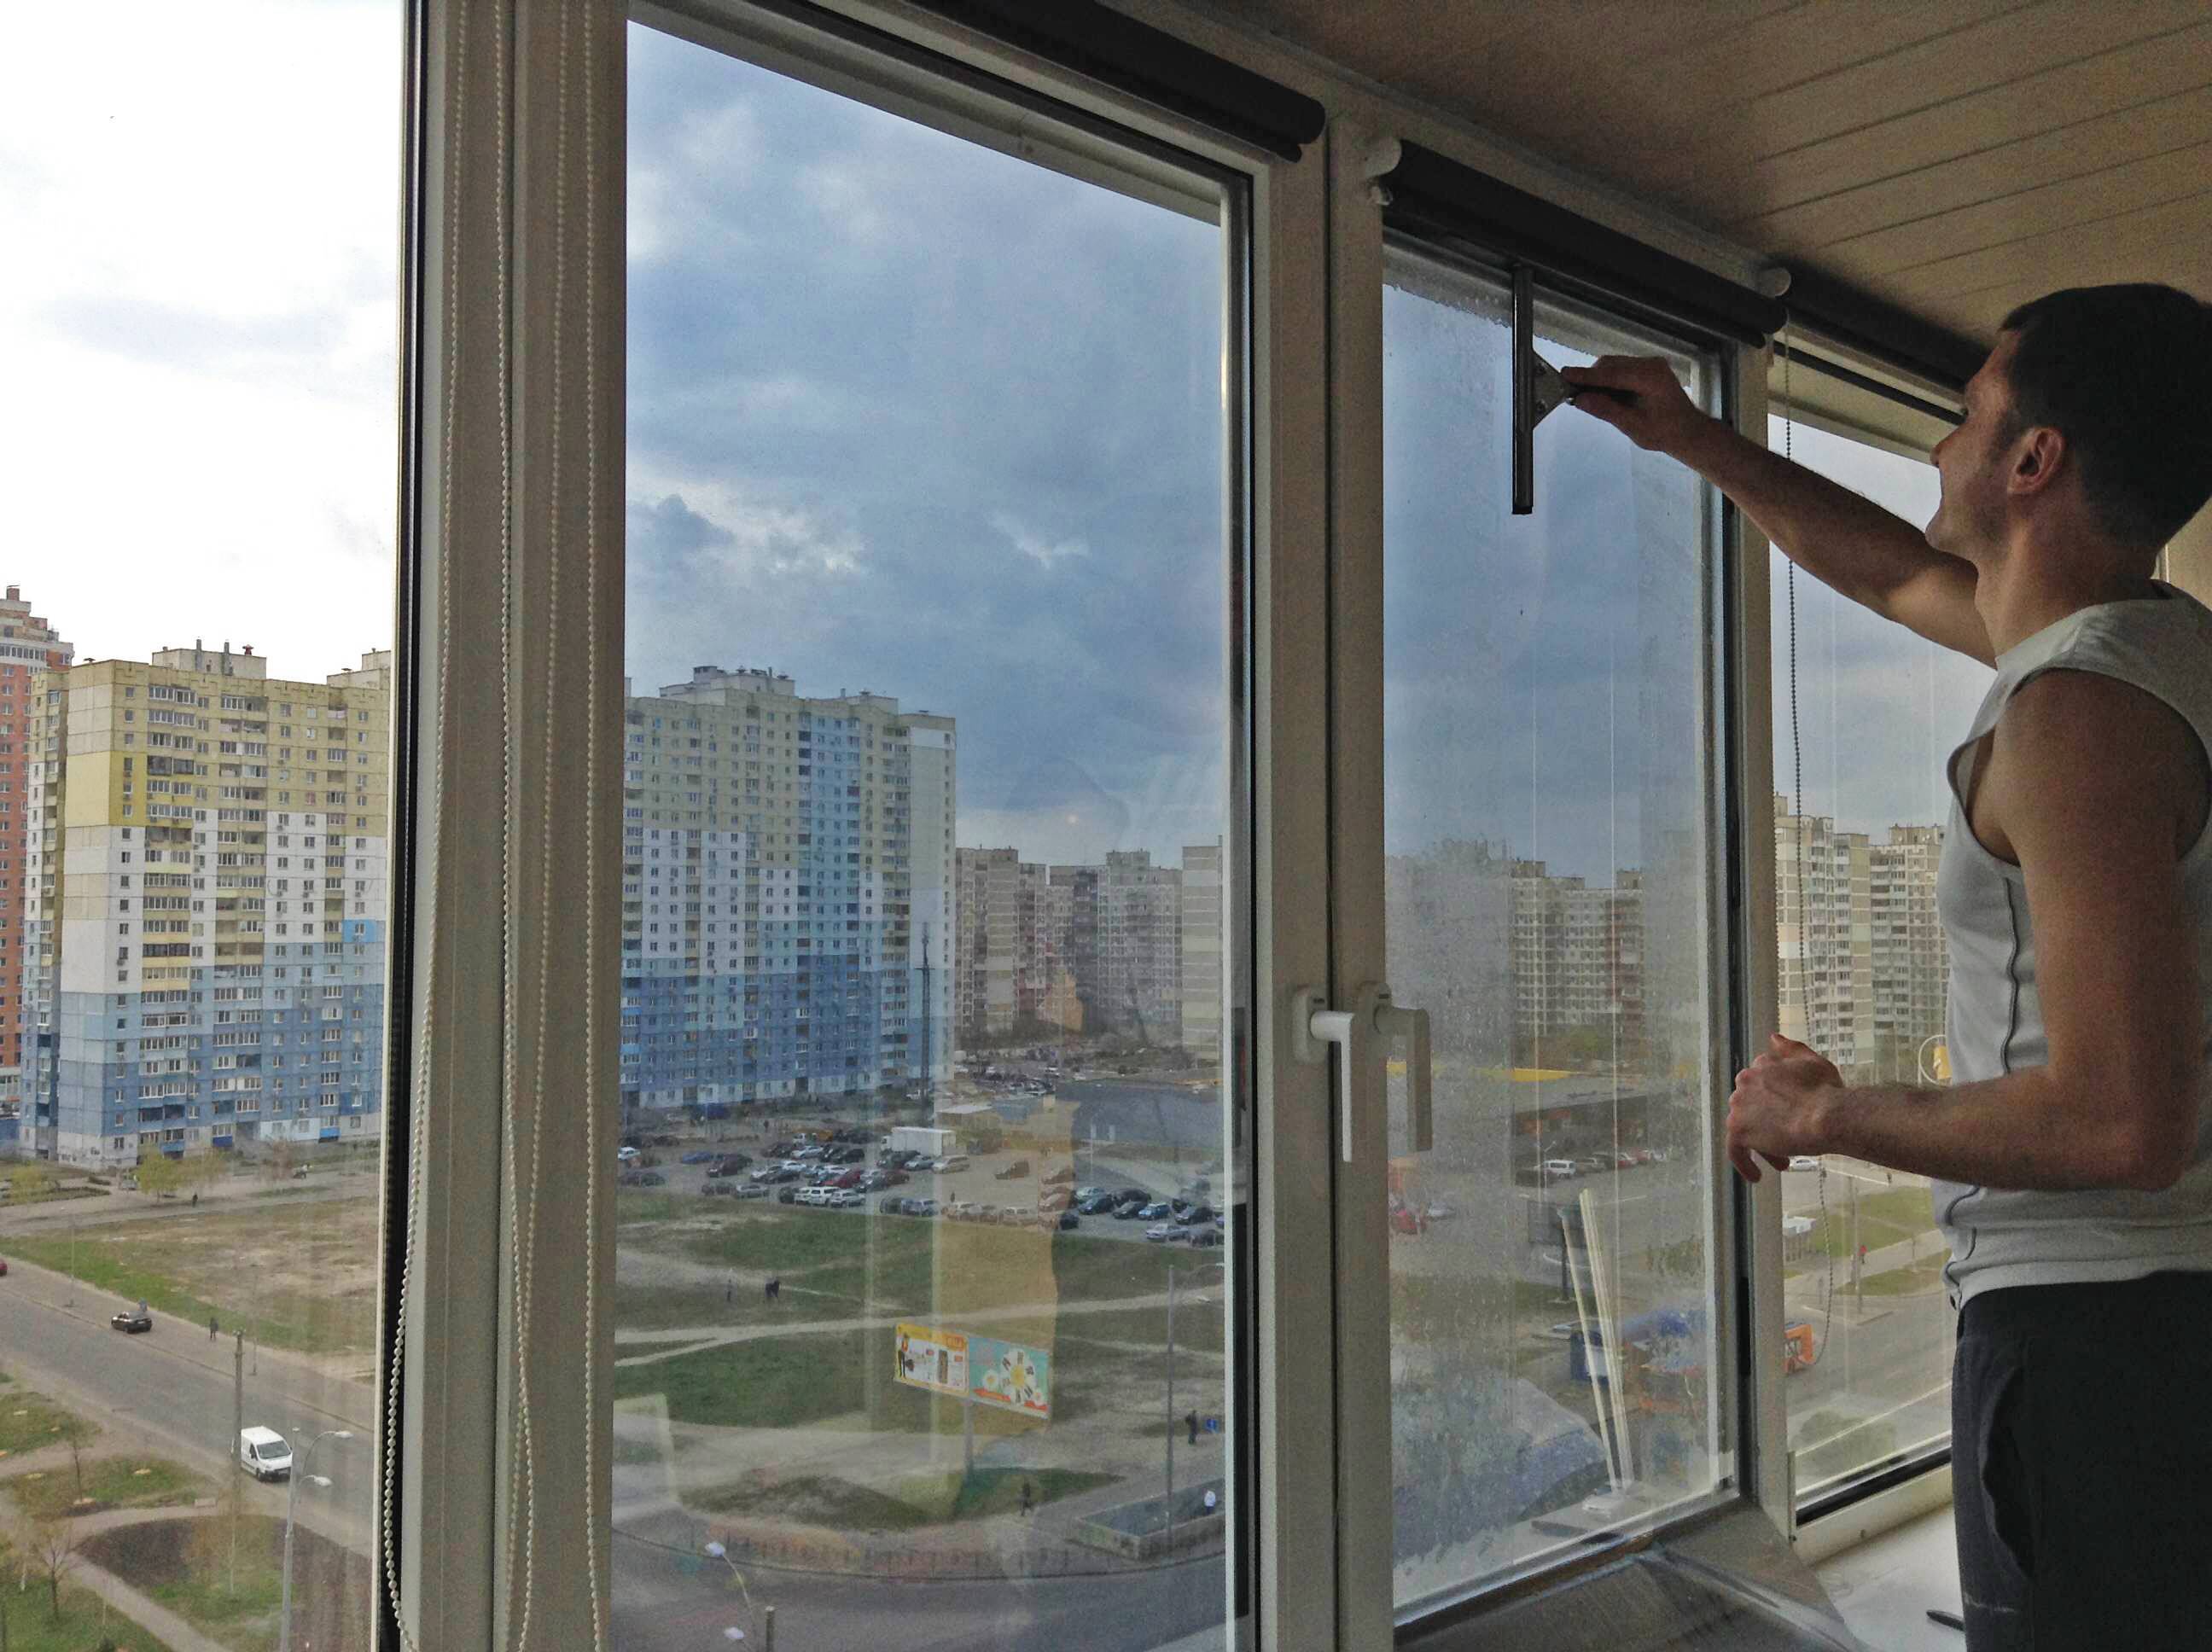 Тонировка балкона своими руками: выбор и монтаж тонировочной пленки на окна